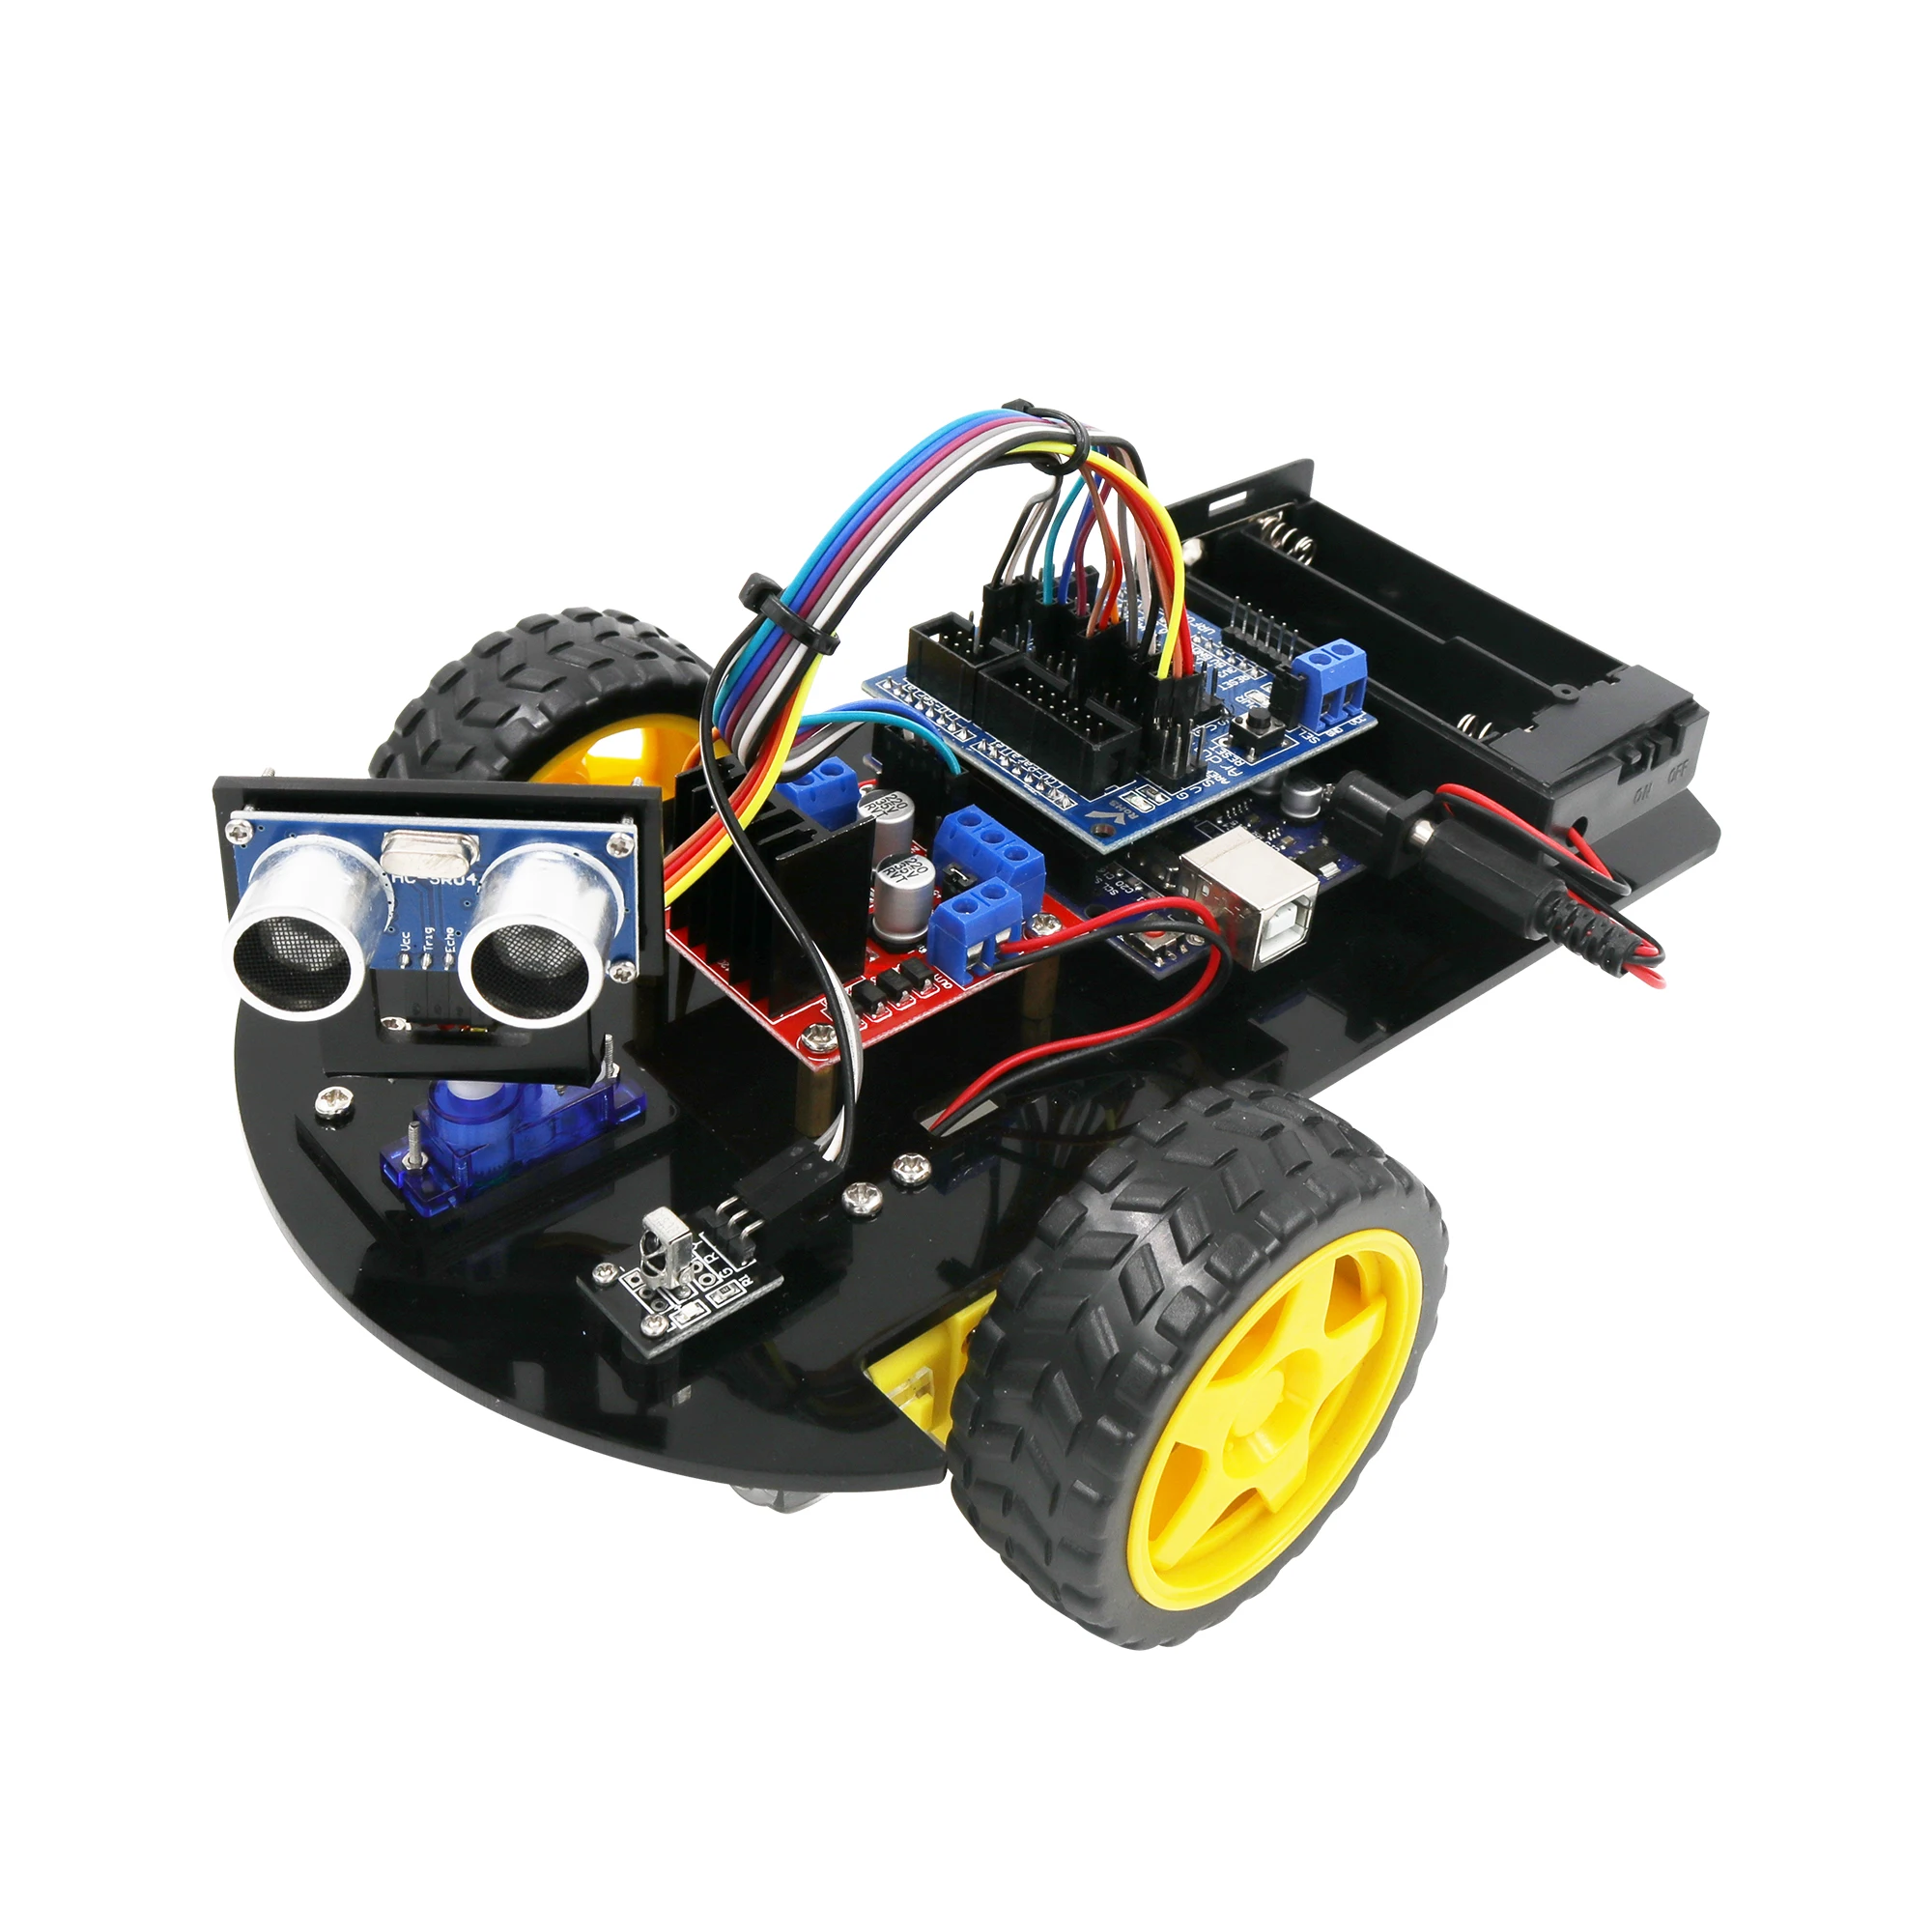 strå Ekspedient formel App Control Smart Robot Car 2wd Chassis Kit For Diy Assembled Kit For  Arduino - Buy Robot Car Kit,Robot Car For Arduino,Smart Robot Car Product  on Alibaba.com